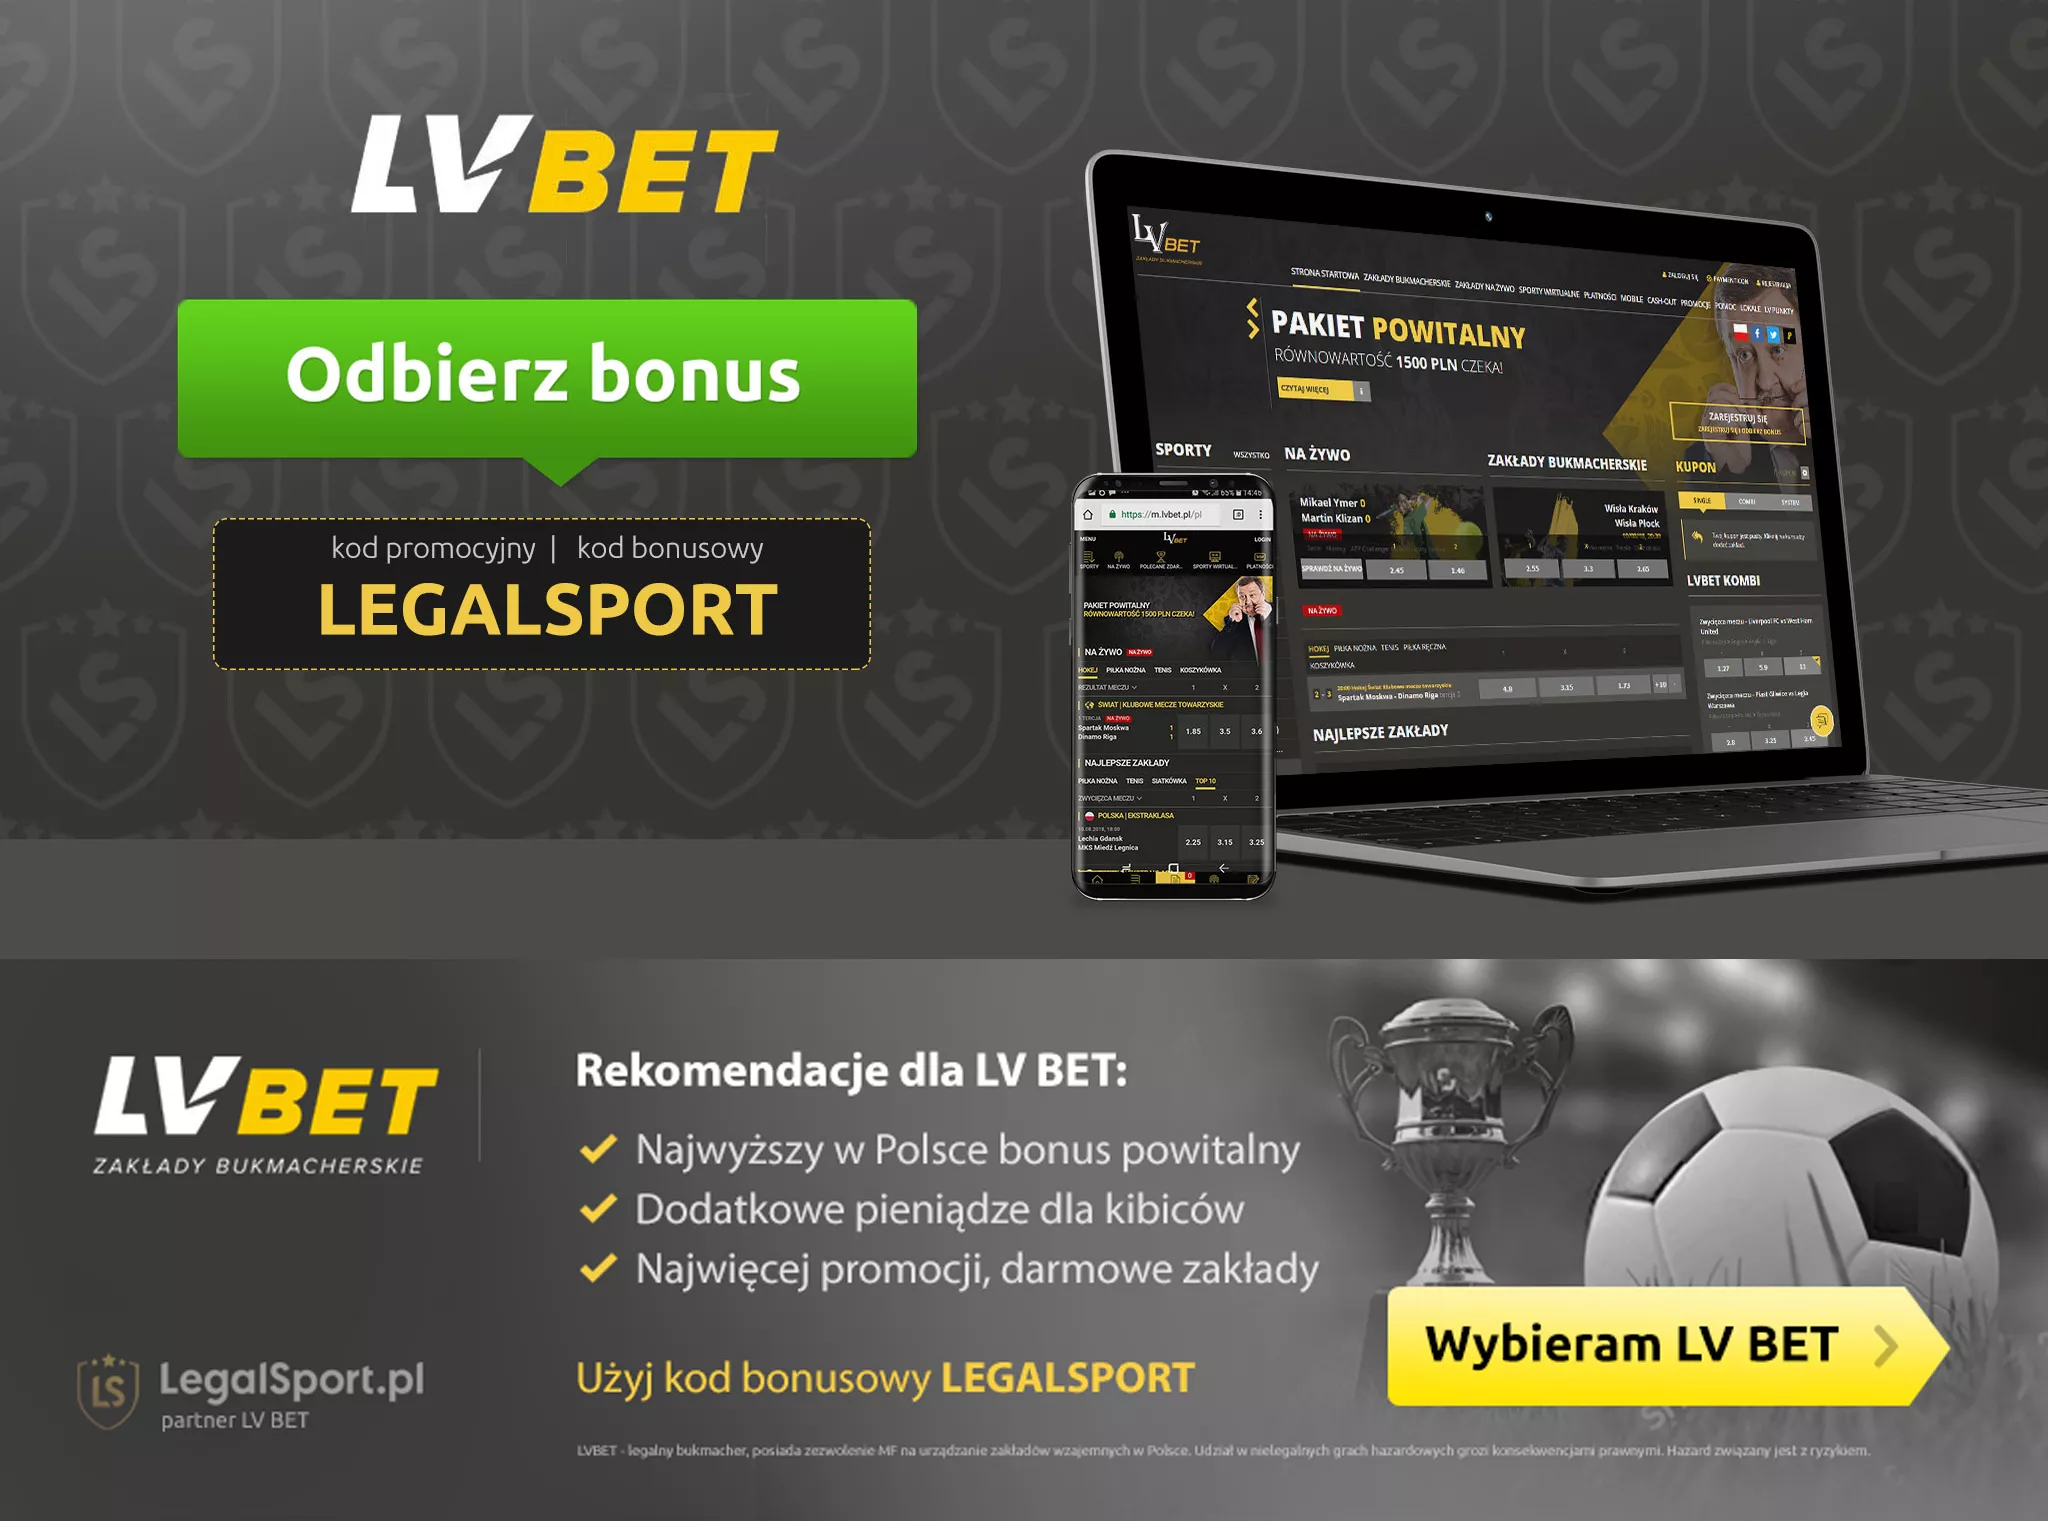 Bonus LVBET jest legalny w Polsce